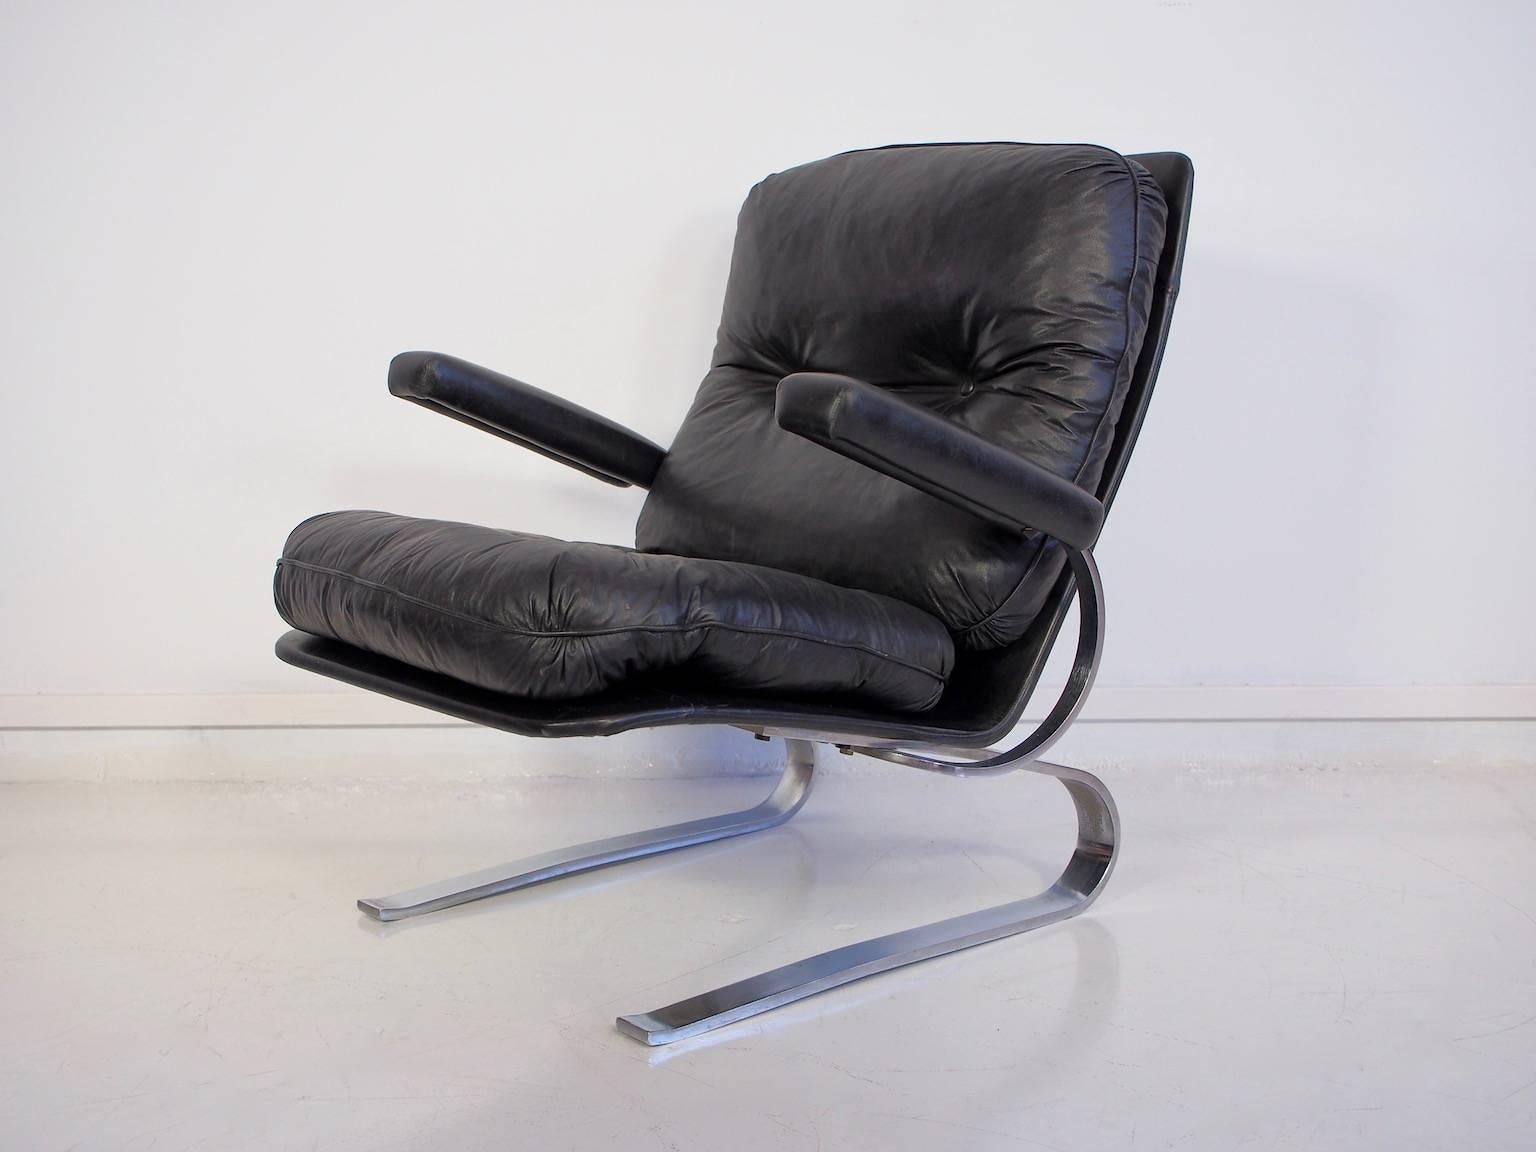 leather and chrome armchair